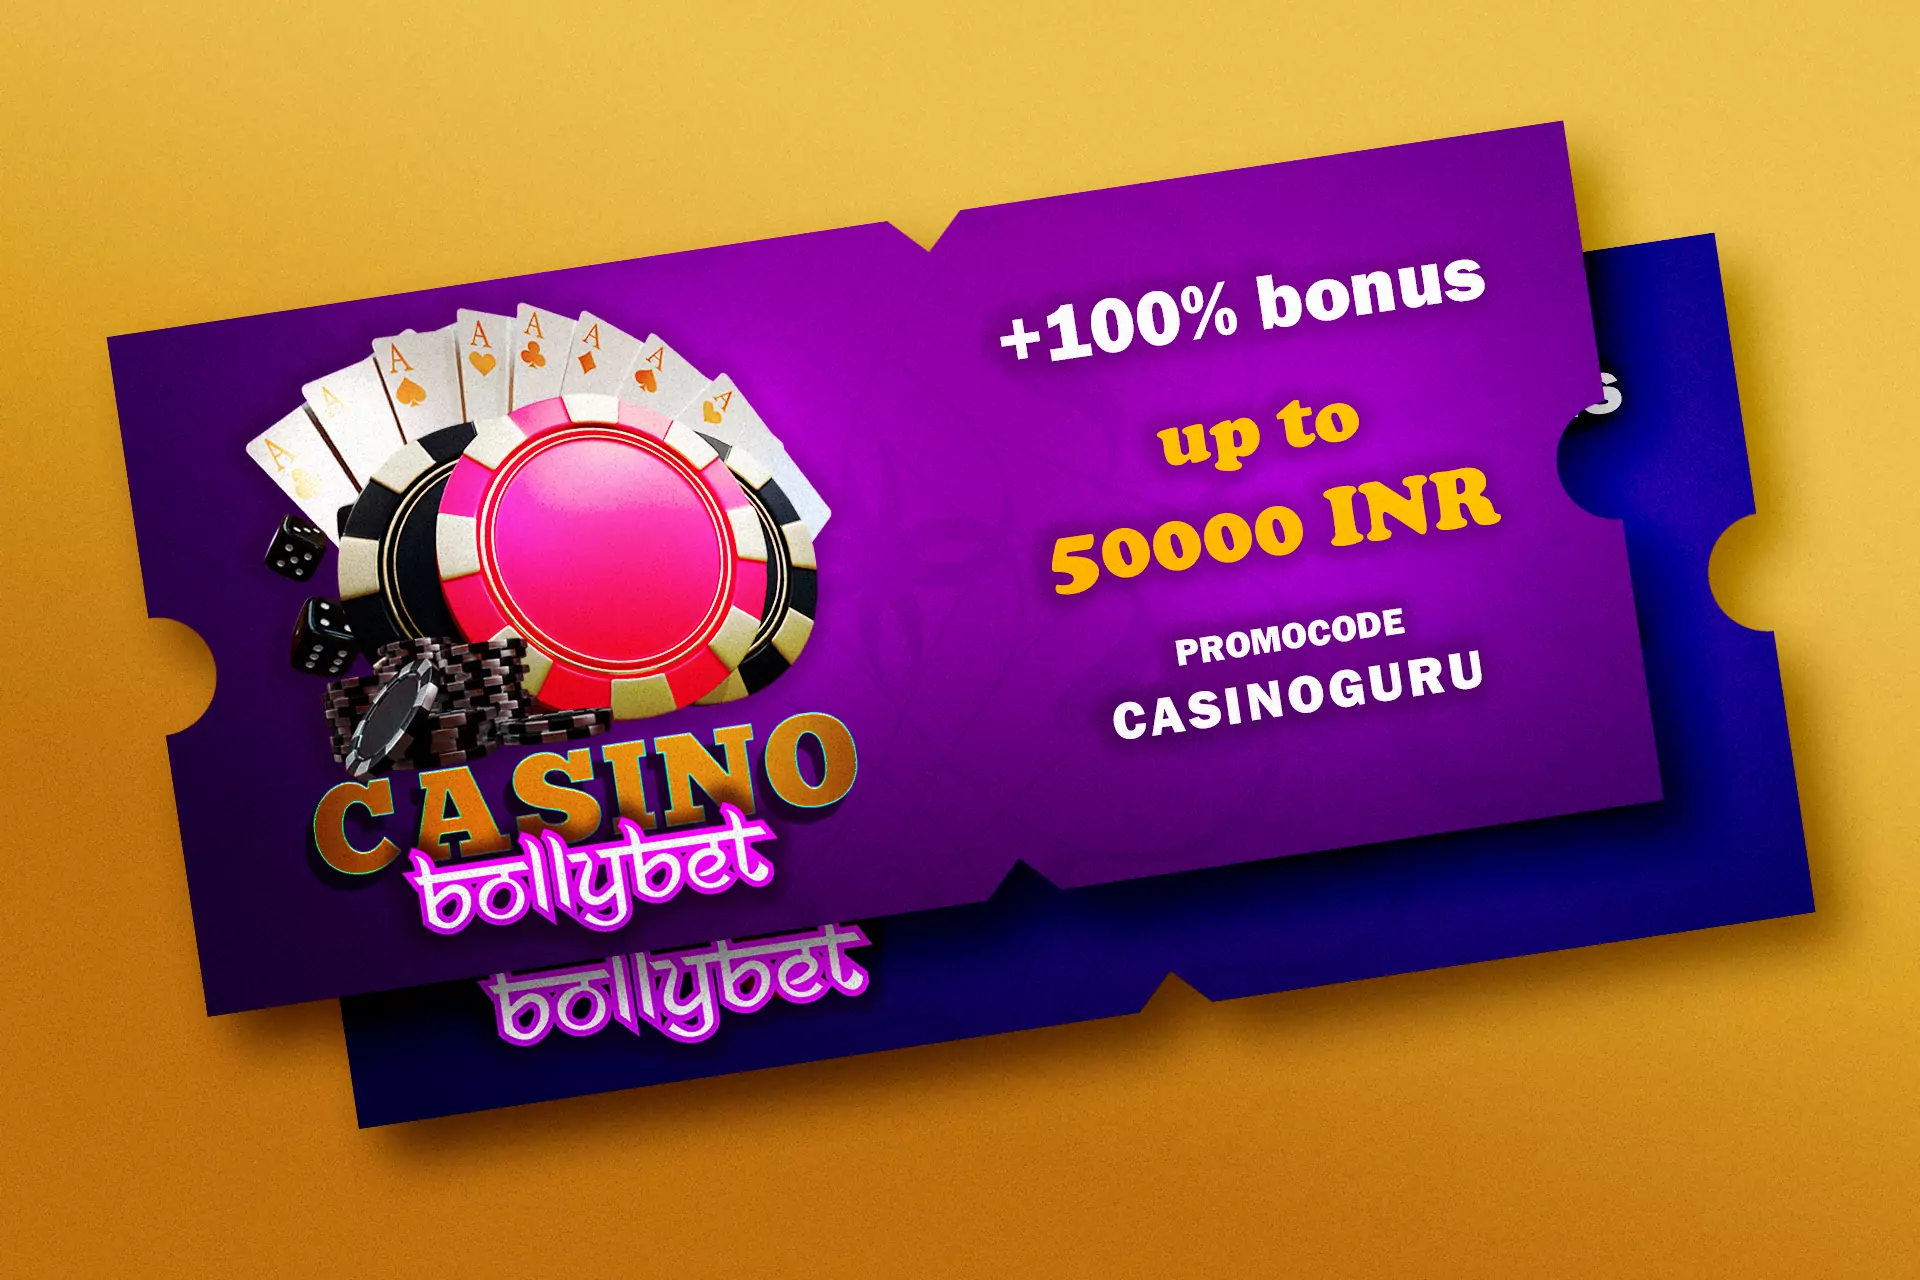 कैसीनो गेम खेलने के लिए अपनी पहली जमा राशि पर 50,000 रुपये बोनस प्राप्त करने के लिए प्रोमो कोड कैसिनोगुरु का उपयोग करें।